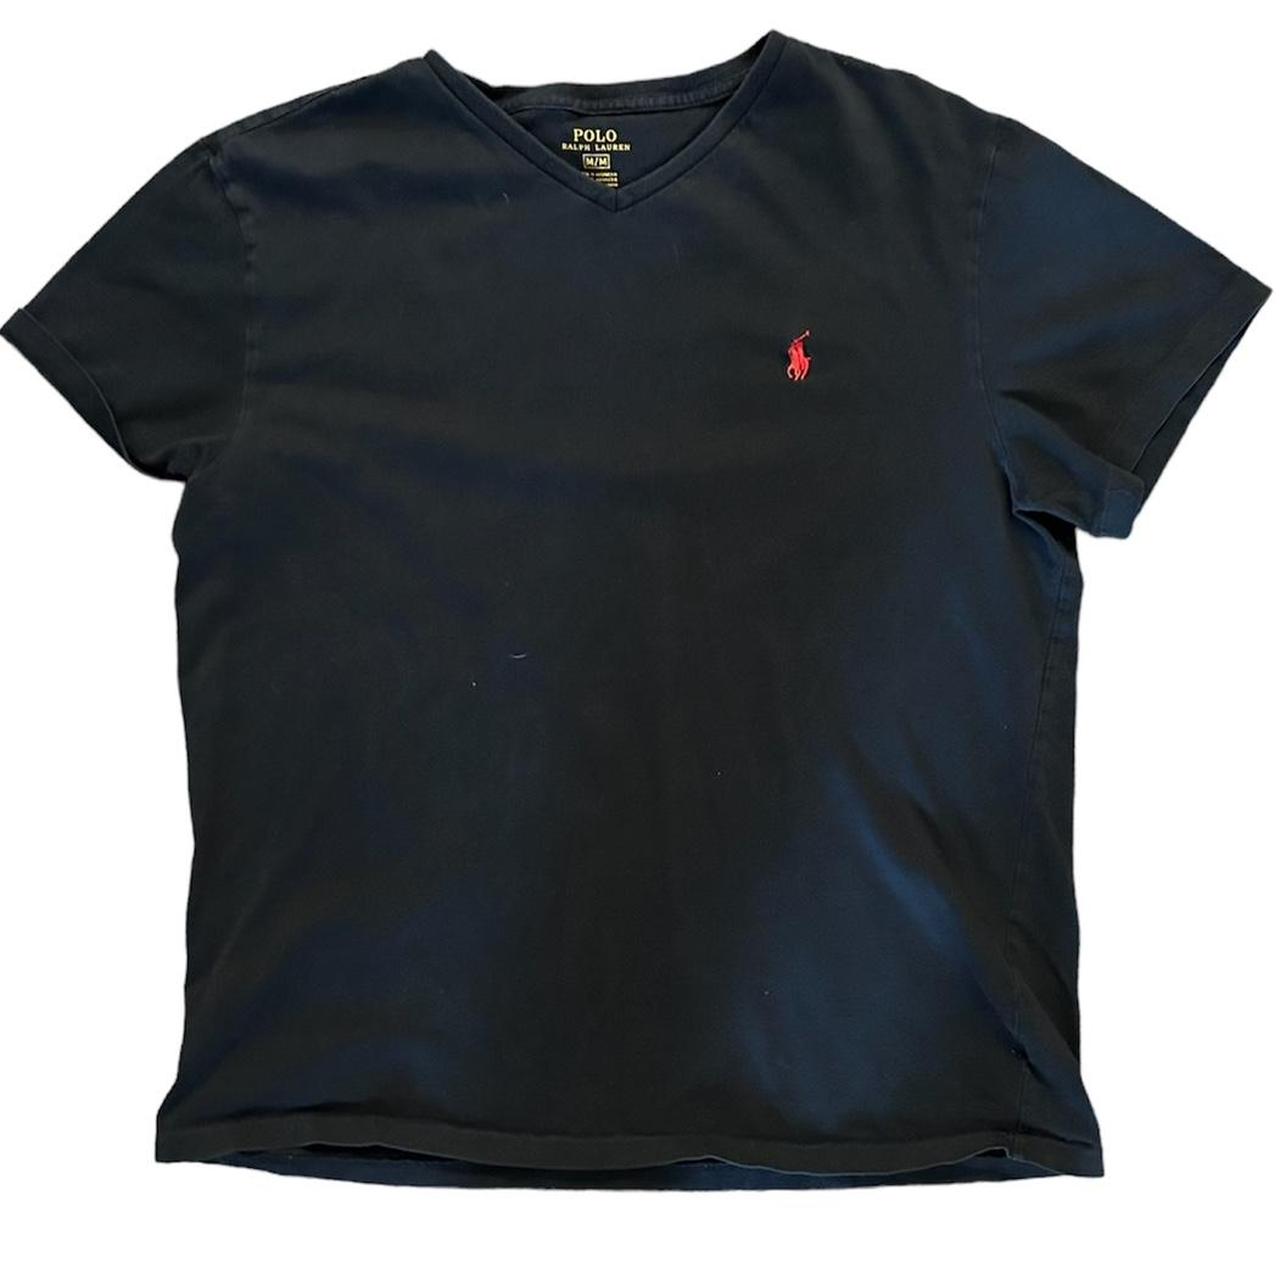 Navy Blue + Black Polo Ralph Lauren Shirt bundle -... - Depop